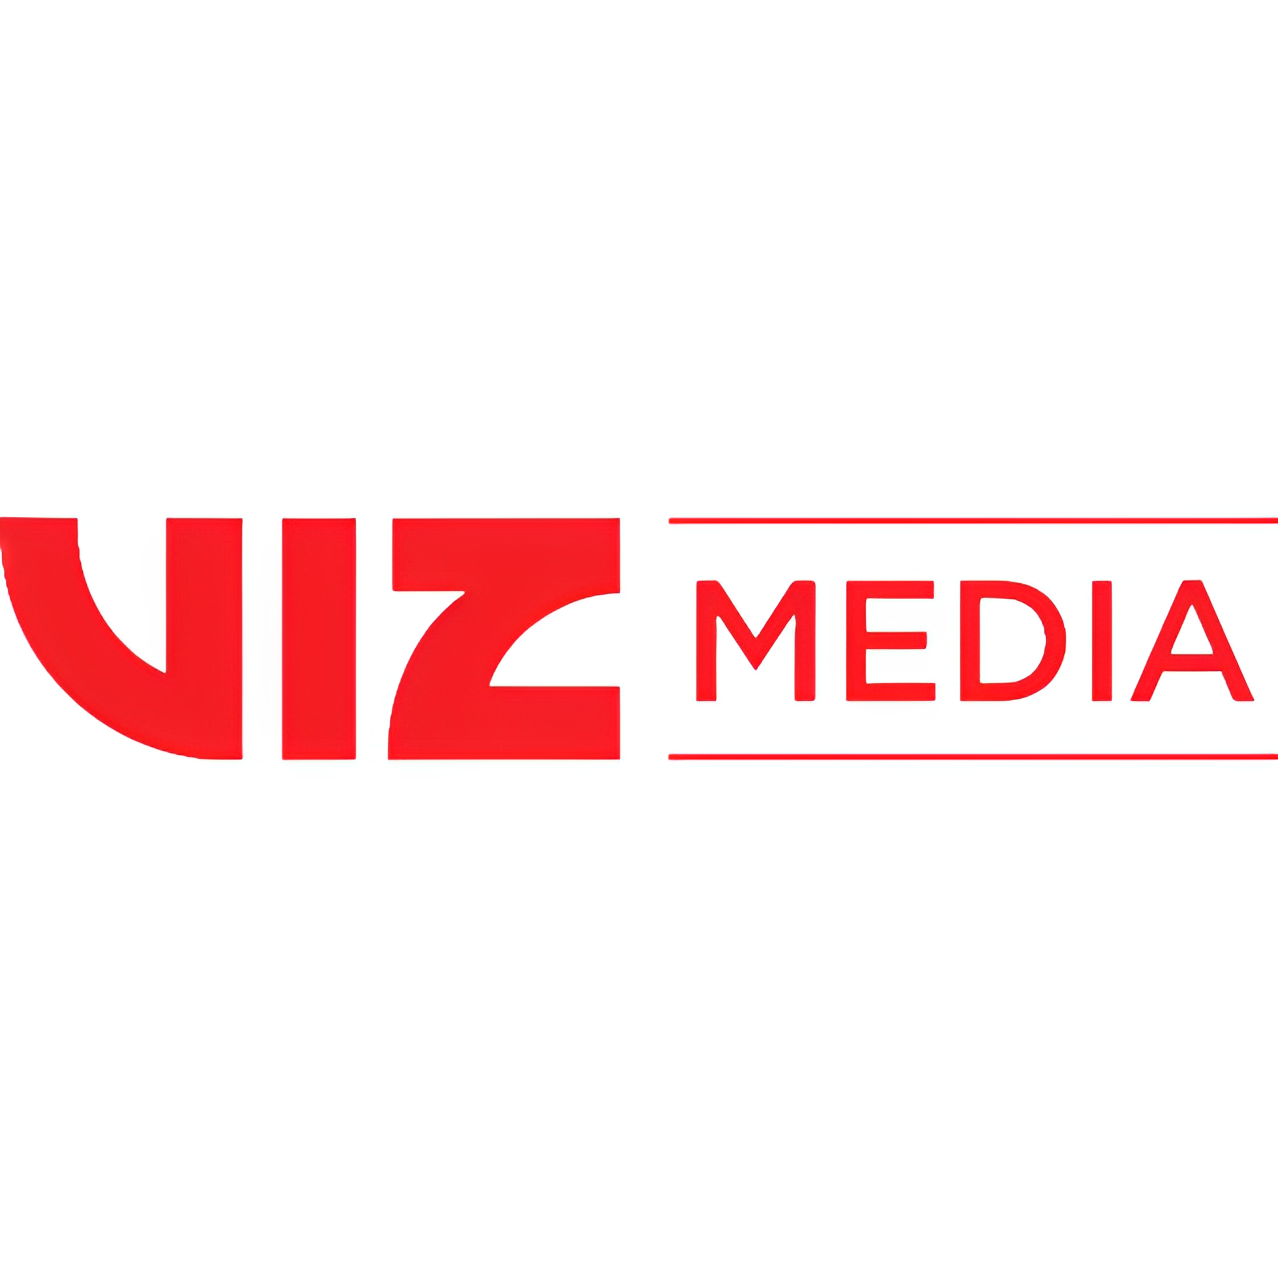 Viz Media